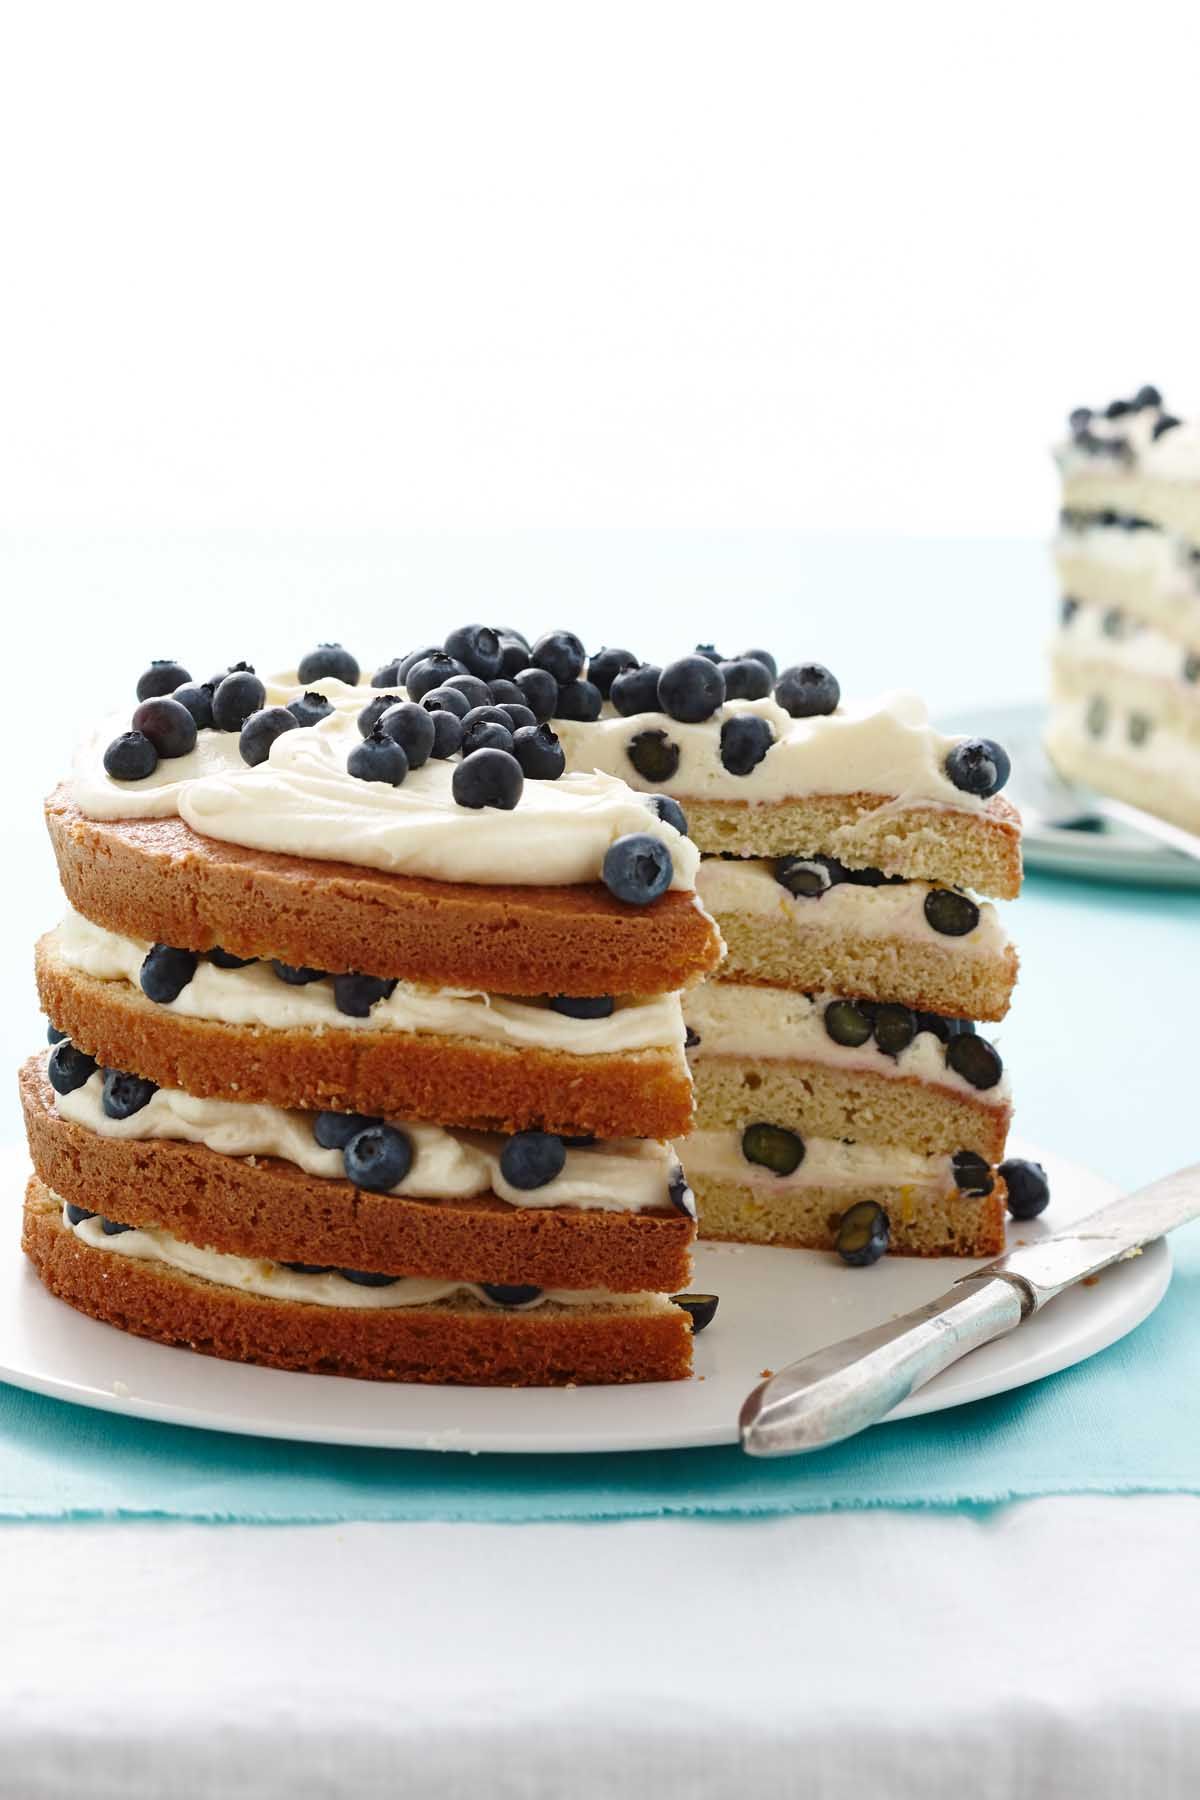 Bernadette's Homemade Cakes